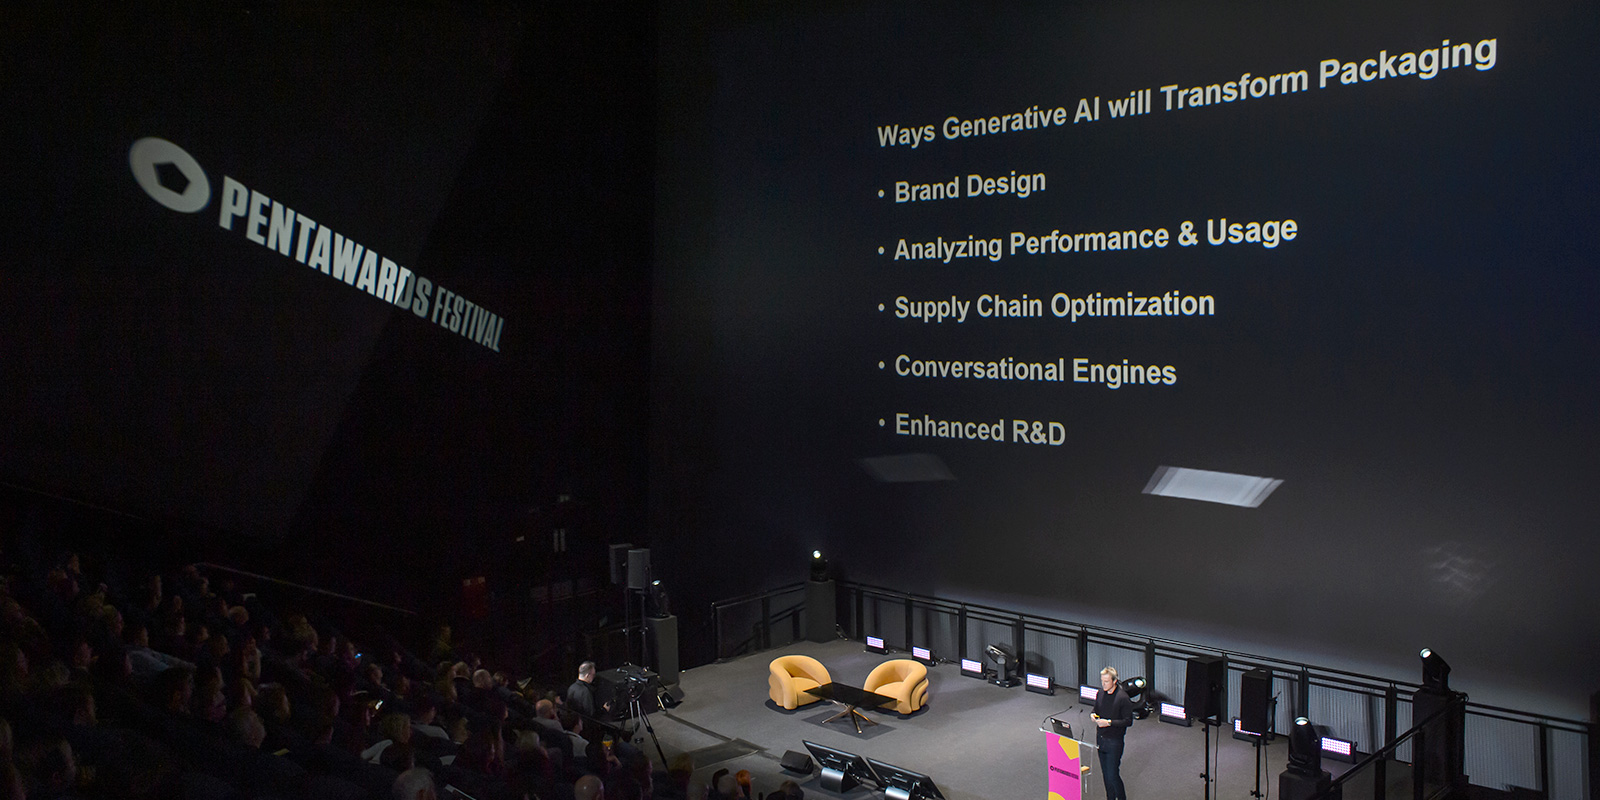 Un hombre en el escenario con una pantalla grande que muestra una lista de formas en que la IA transformará el packaging.